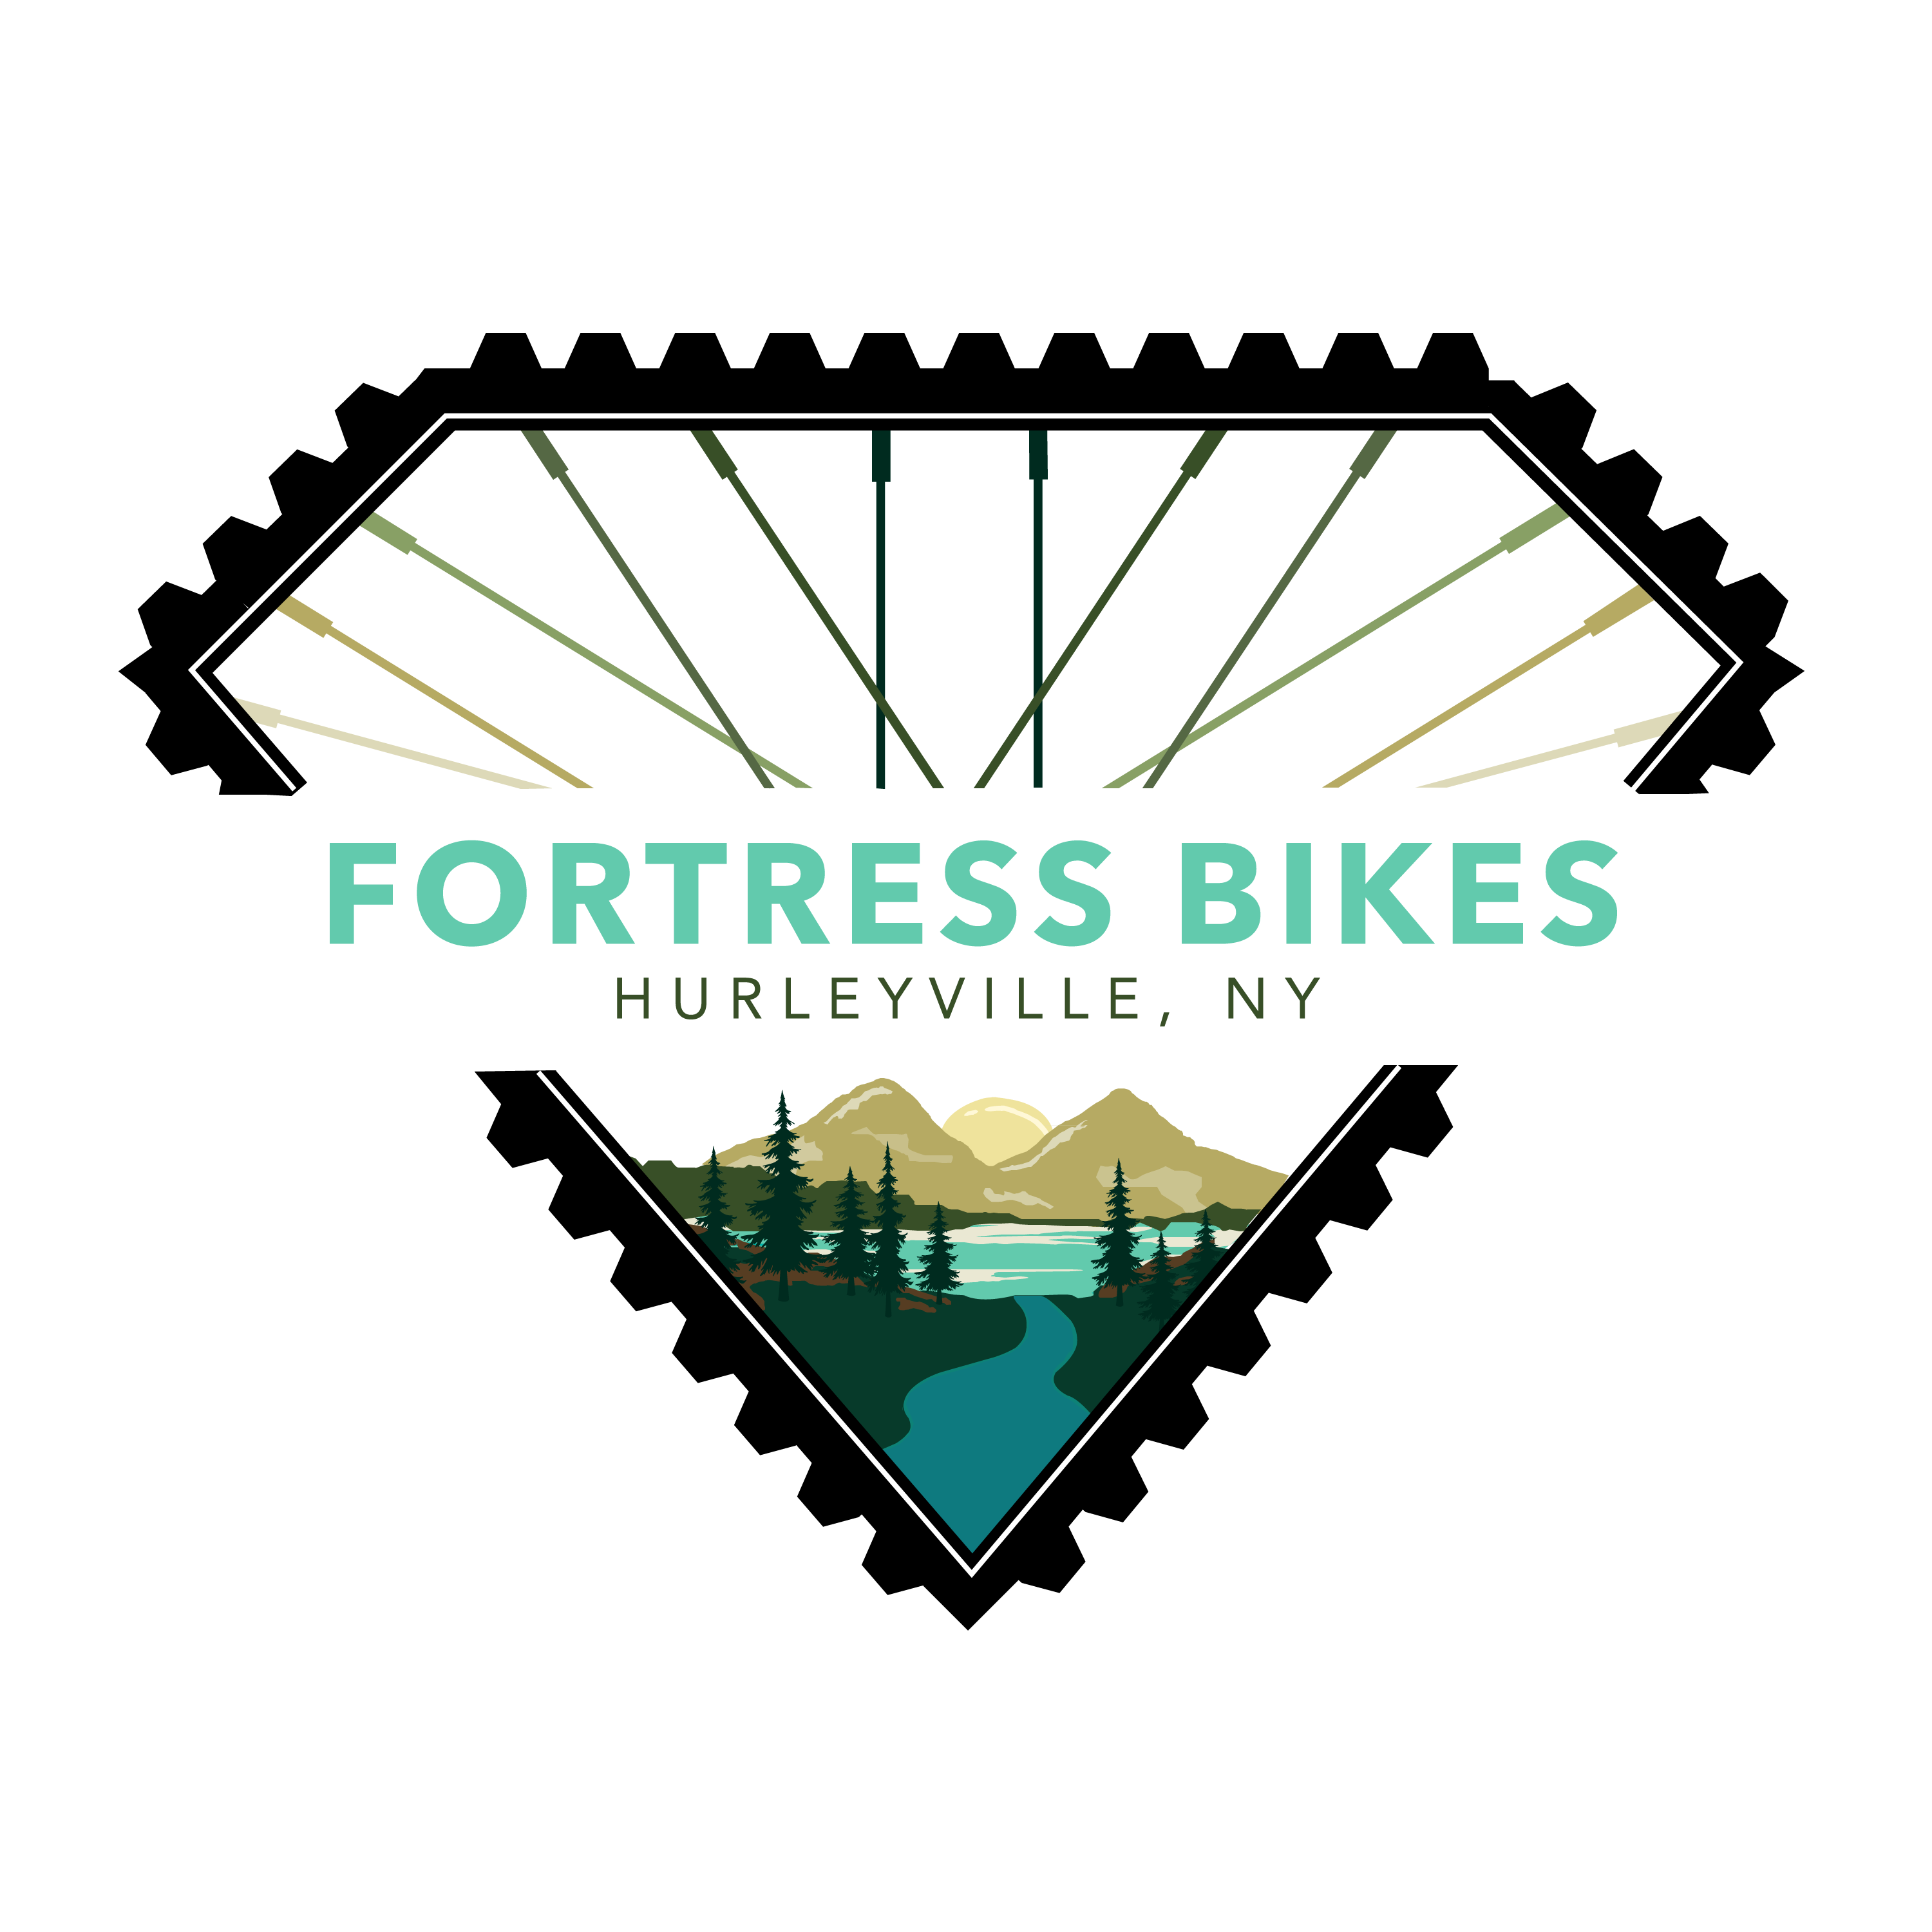 Fortress Area Bikes